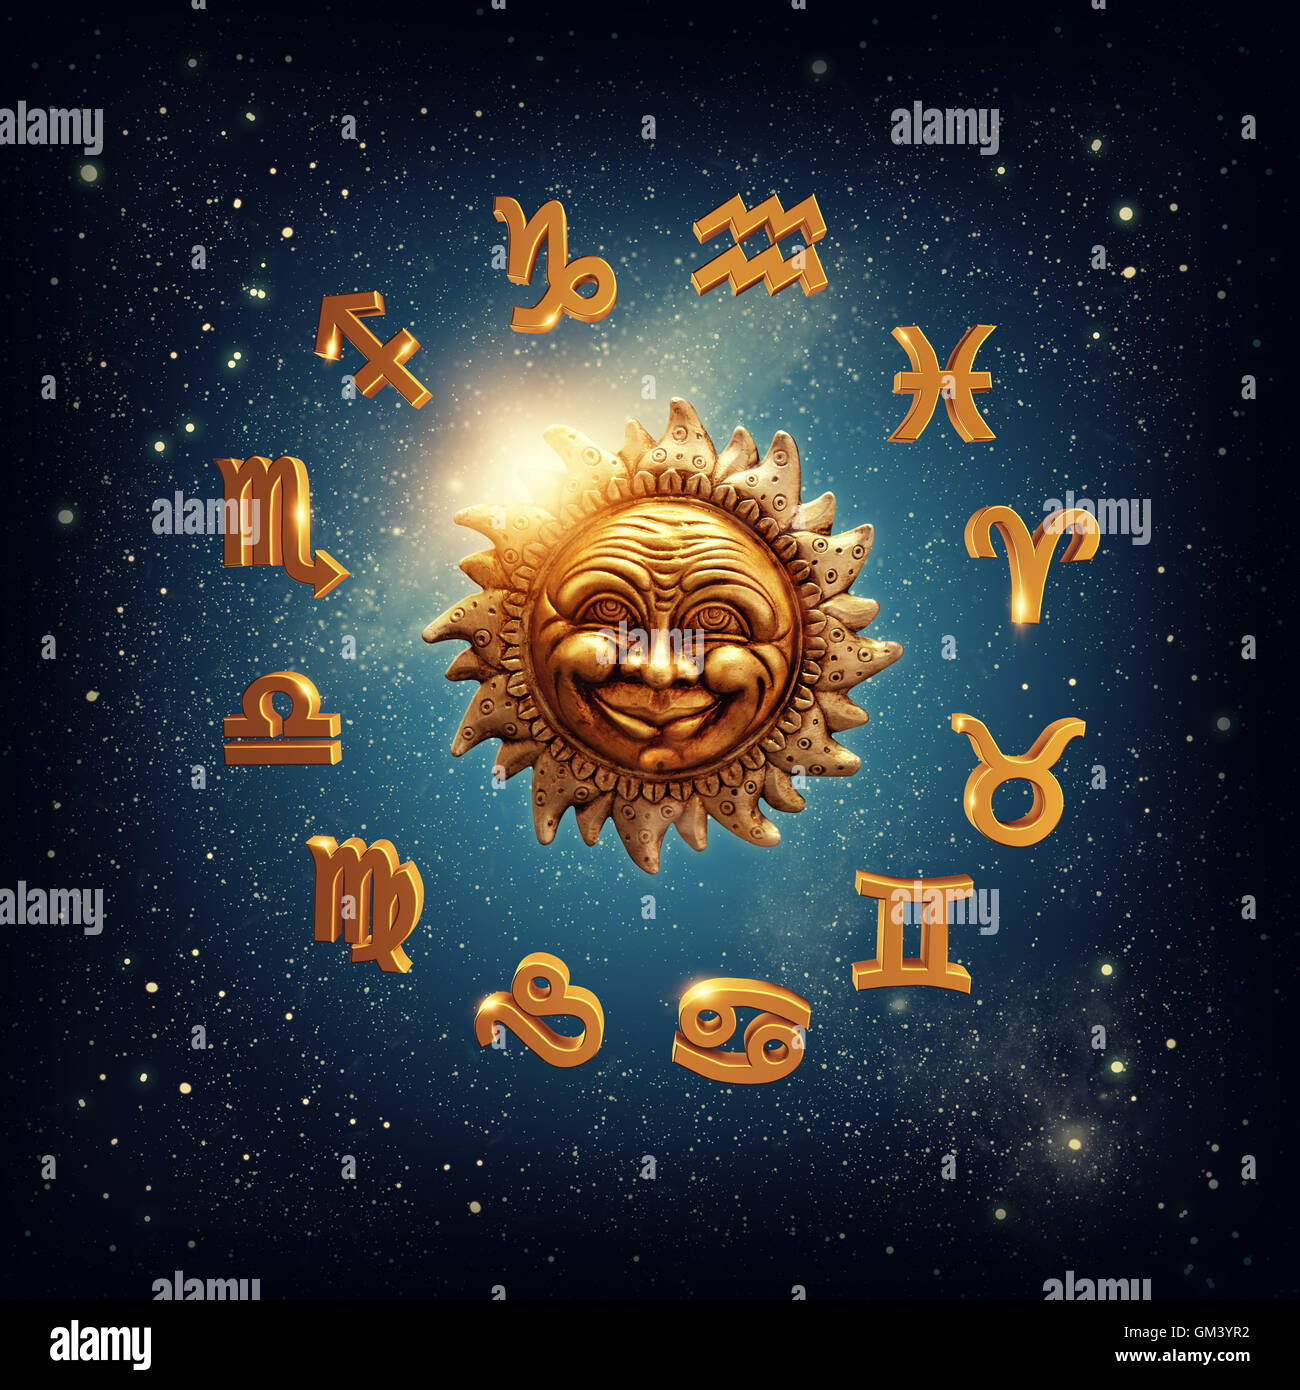 Sun Signs by Shelley Hrdlitschka